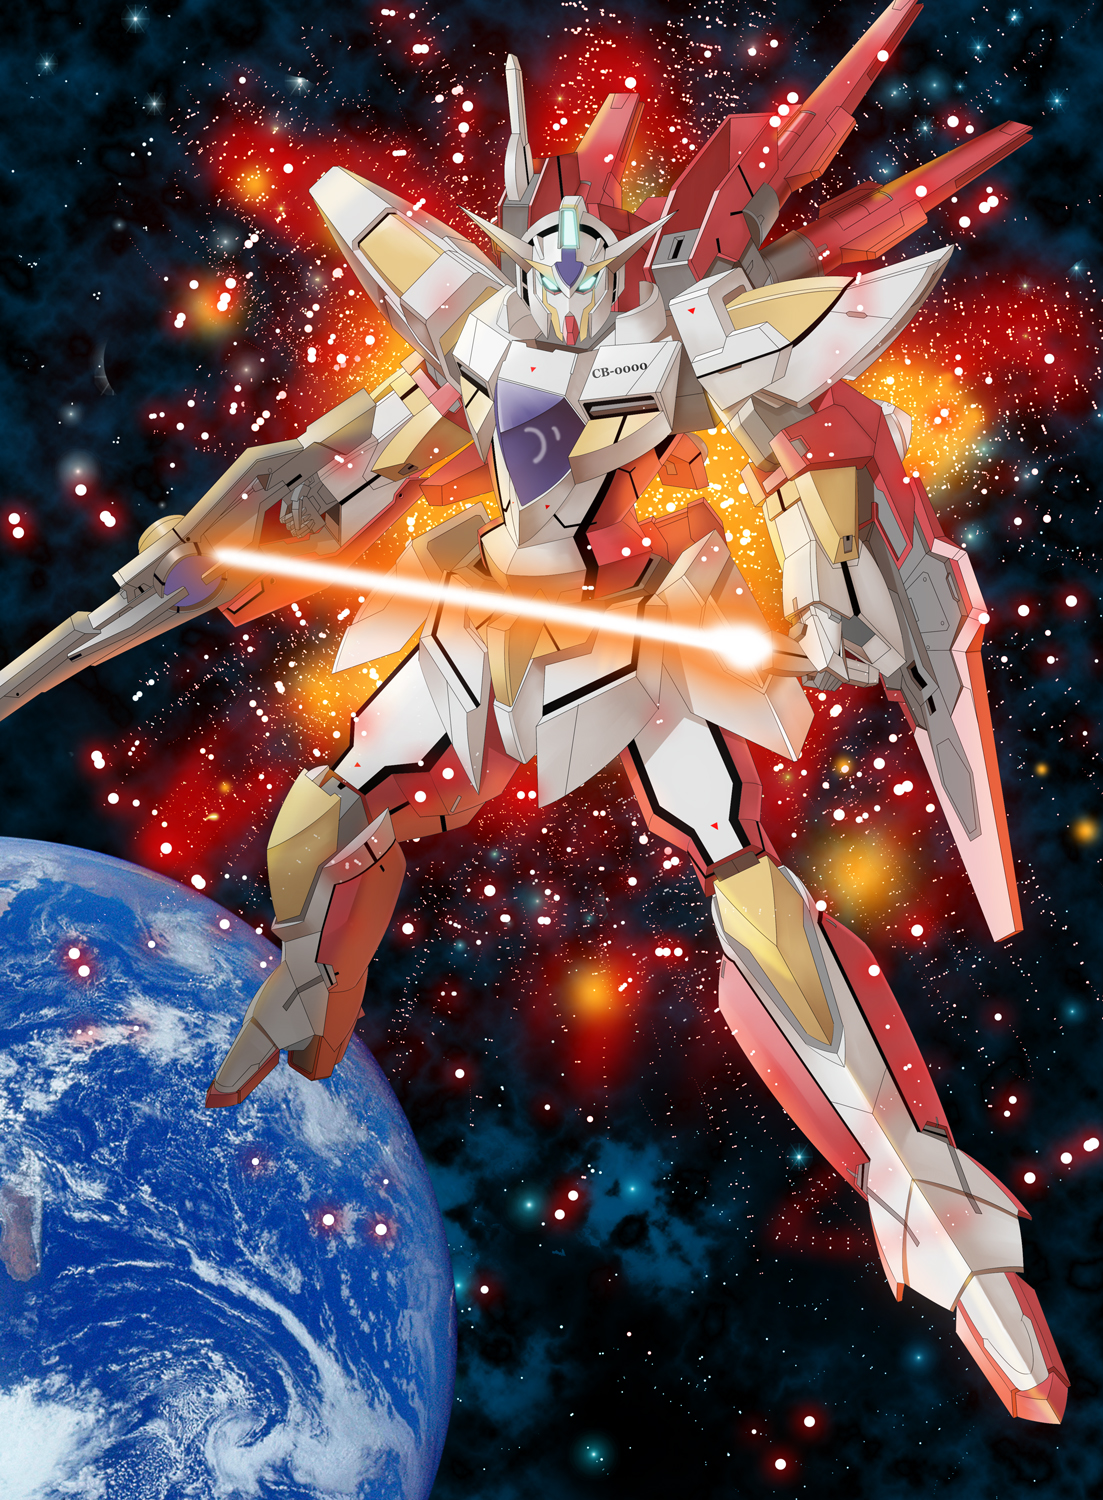 Anime Mechs Gundam Super Robot Wars Reborns Gundam Mobile Suit Gundam 00 Artwork Digital Art Fan Art 1103x1500